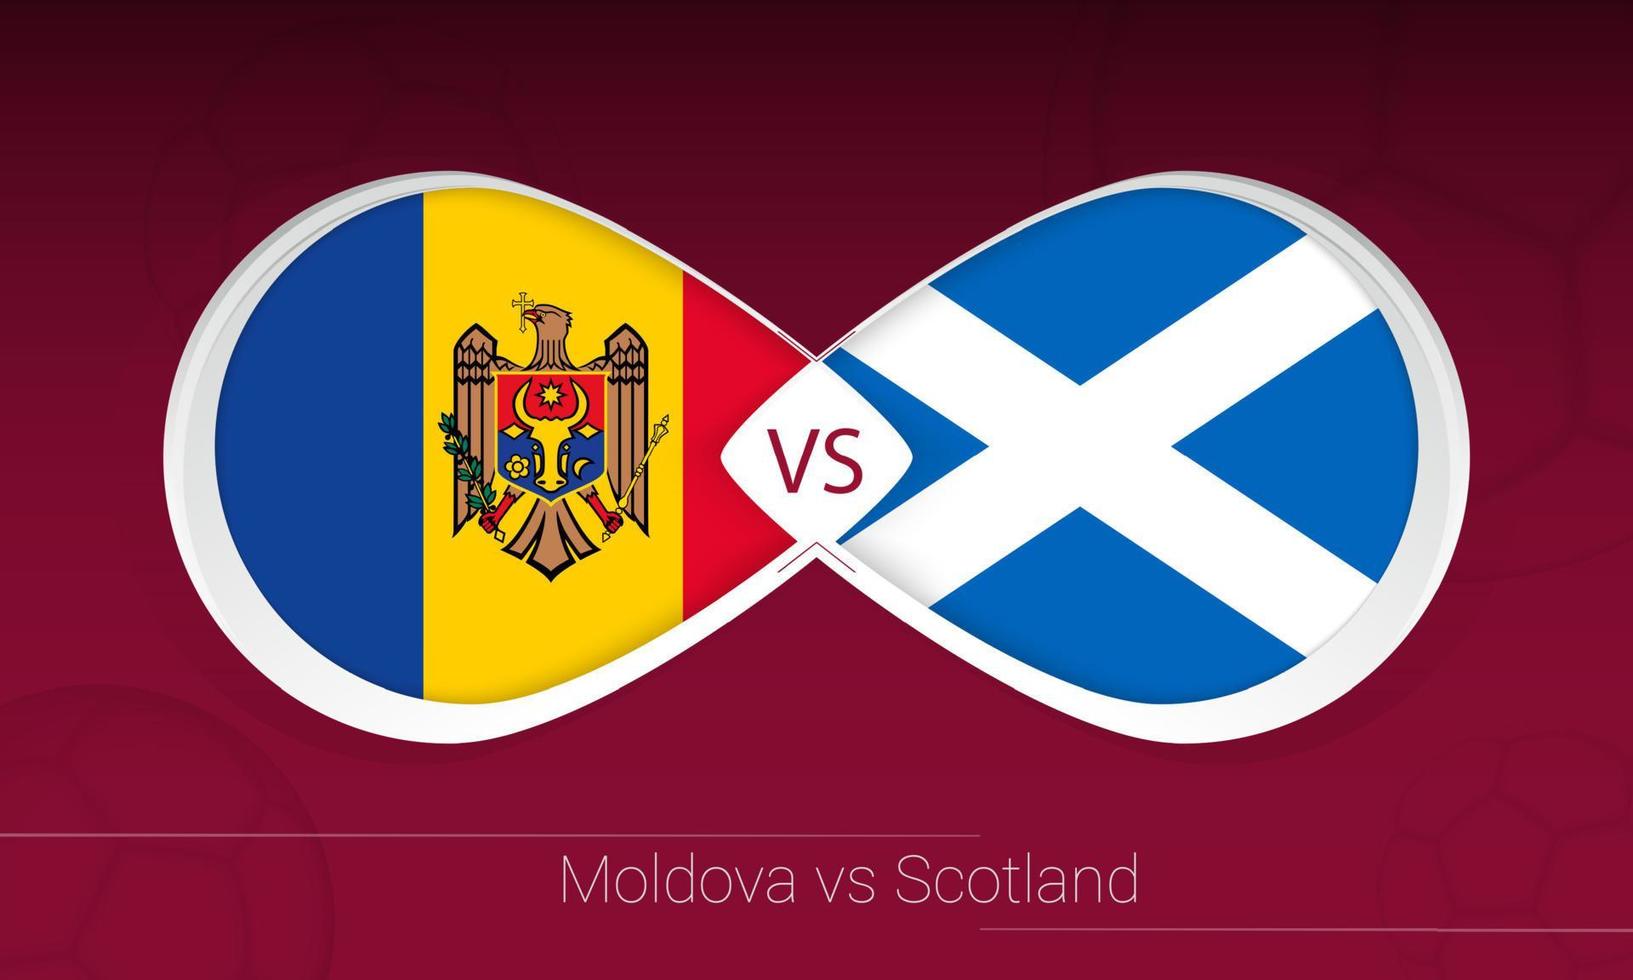 moldawien gegen schottland im fußballwettbewerb, gruppe f. gegen Symbol auf Fußballhintergrund. vektor